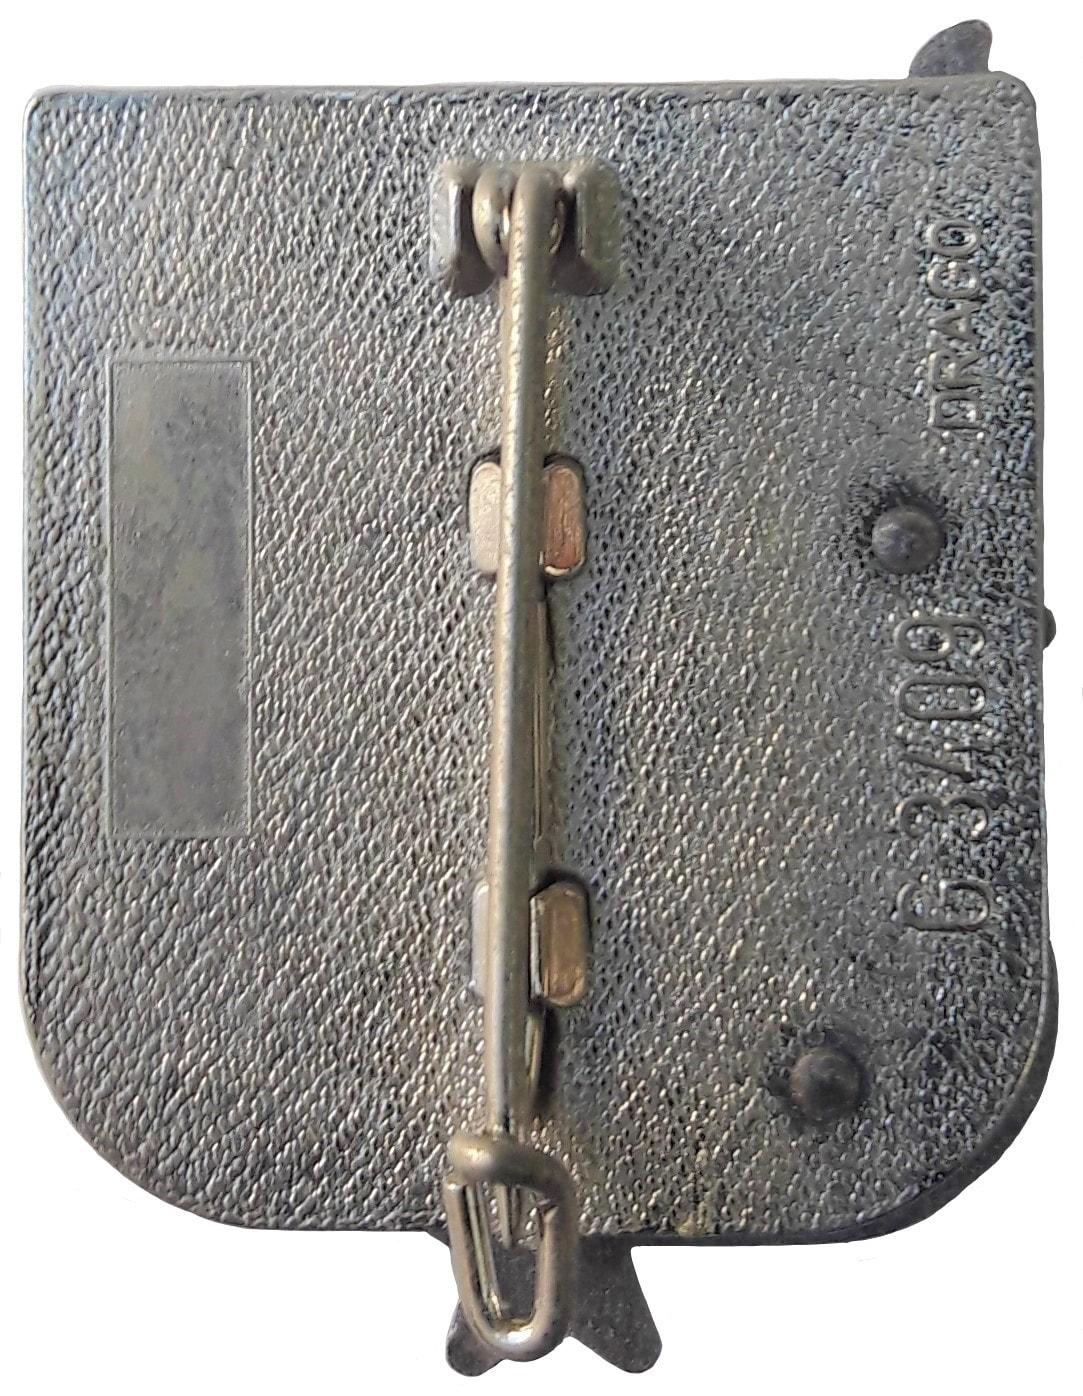 Dos insigne 3e RHC, type 2 : DRAGO. Dos granuleux, plat et argenté, avec monture épingle à attache fixe. Cartouche pour numérotation. Alat.fr